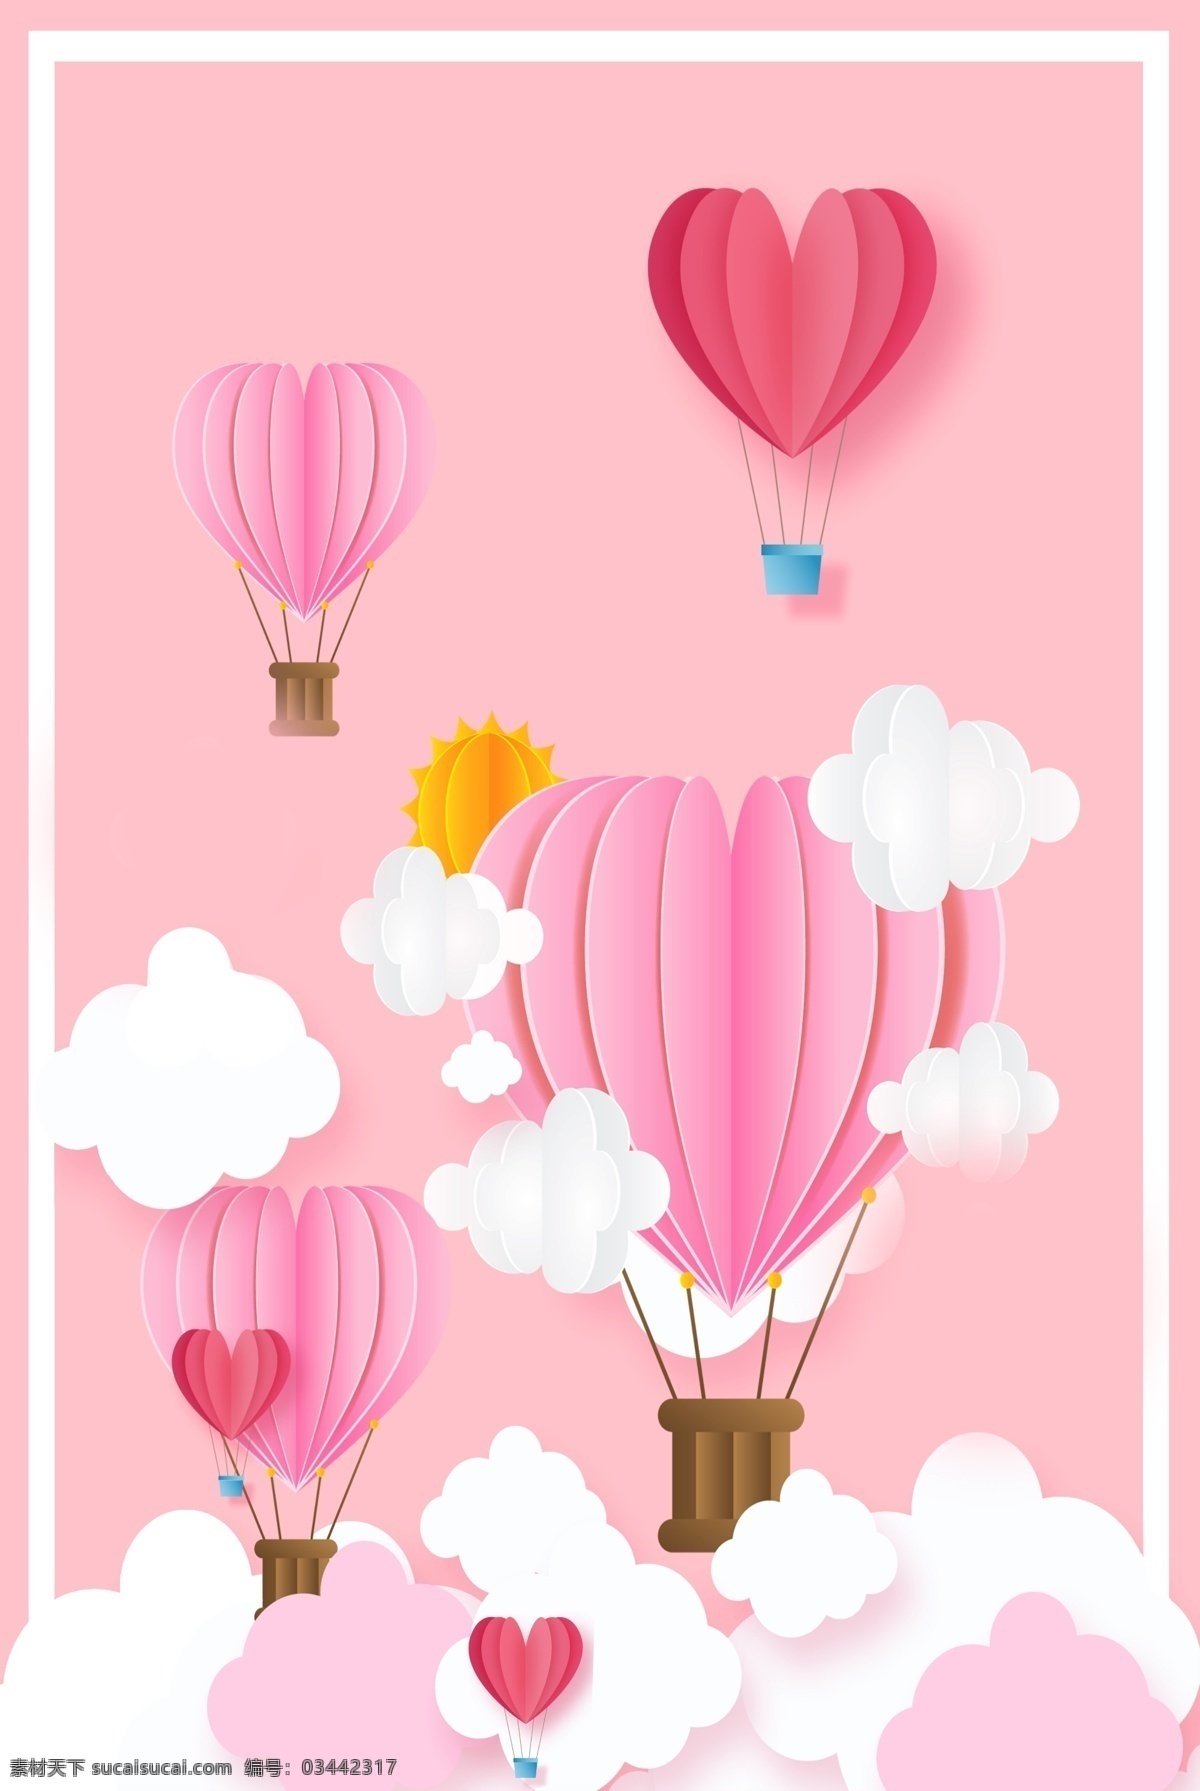 剪纸 风 母亲节 促销 背景 剪纸风 白云 气球 简约 温馨 粉色